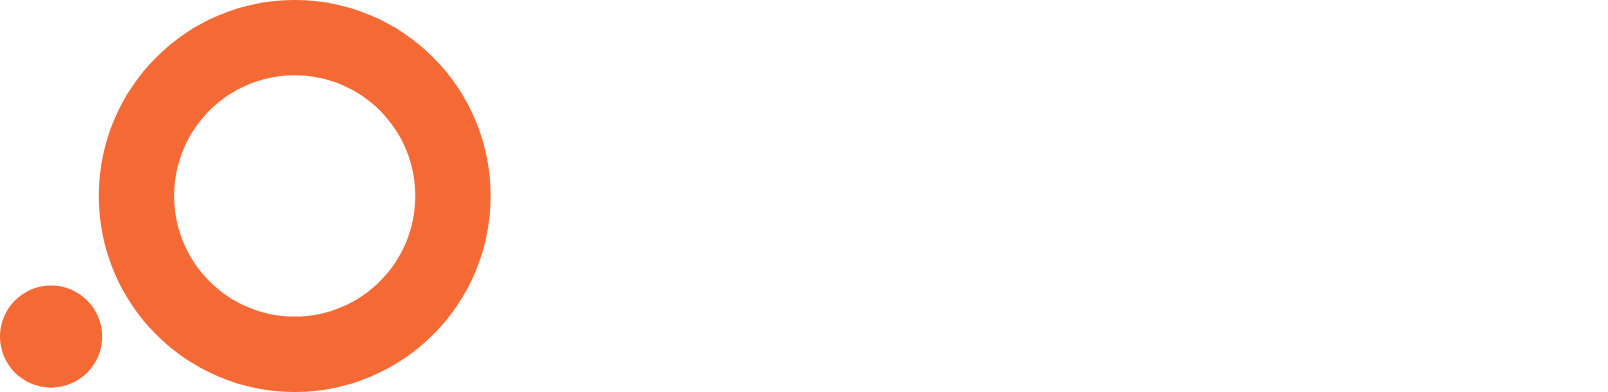 Outset Medical logo large for dark backgrounds (transparent PNG)